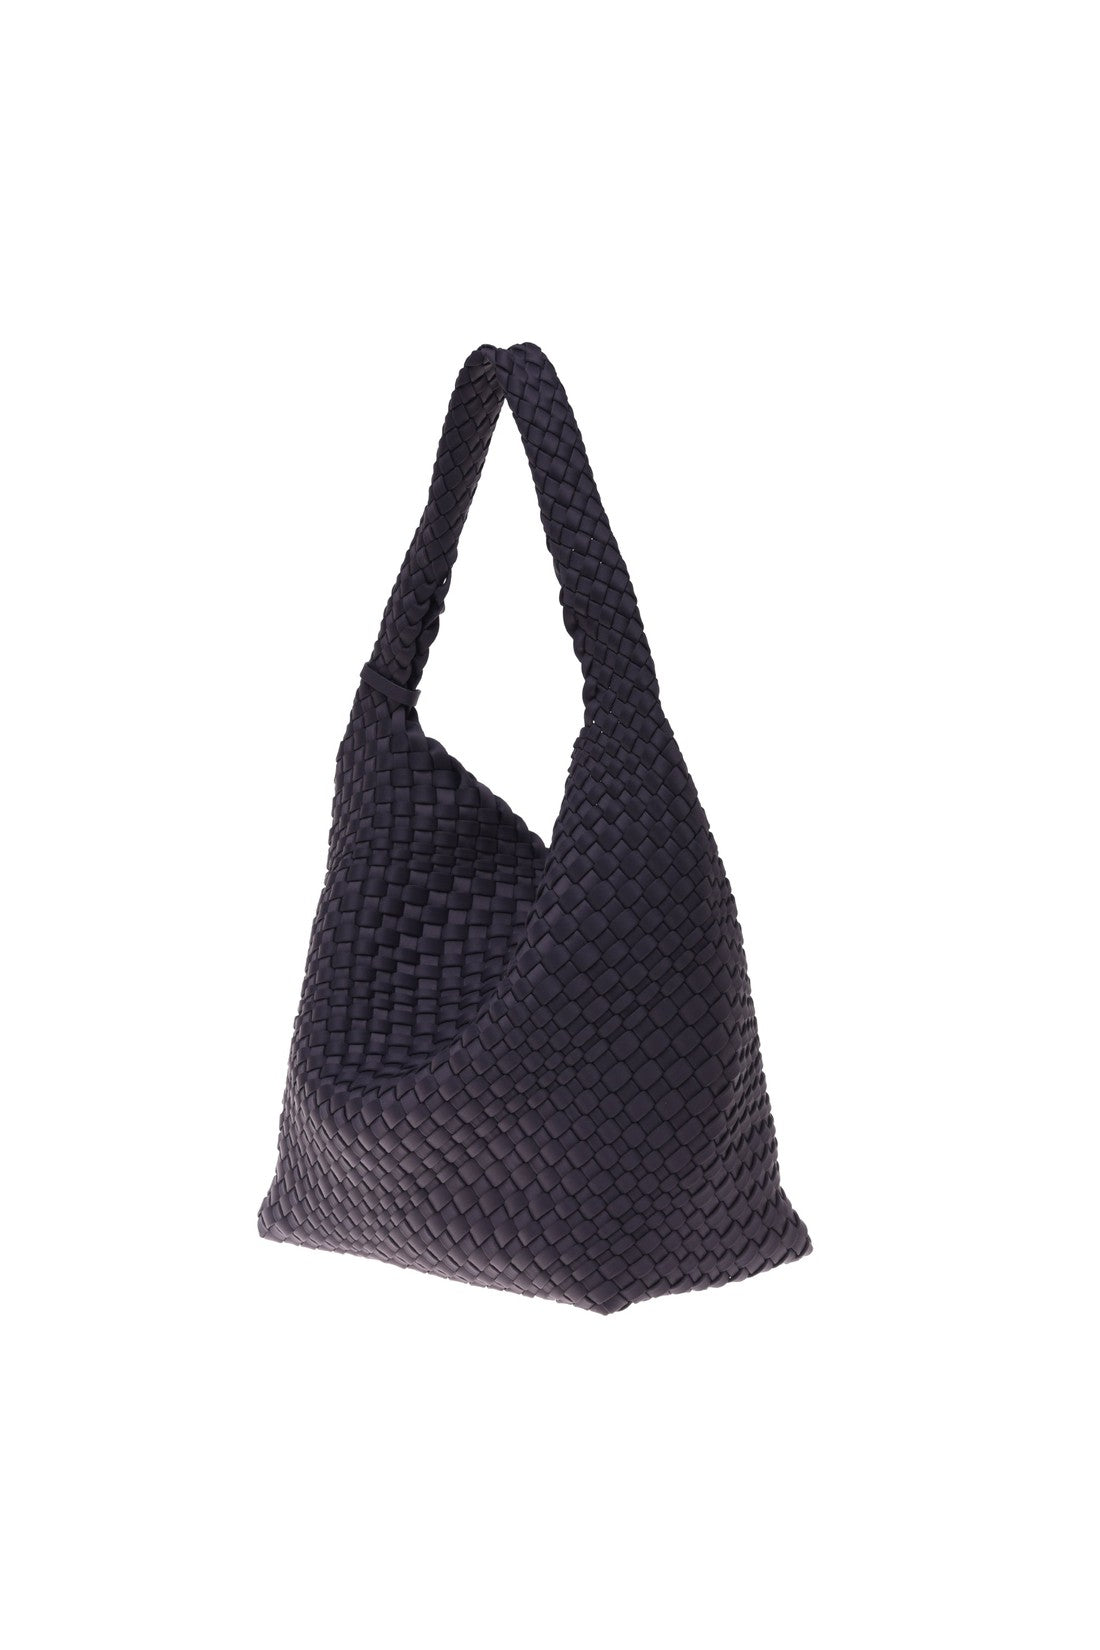 Shoulder bag in dark grey nylon